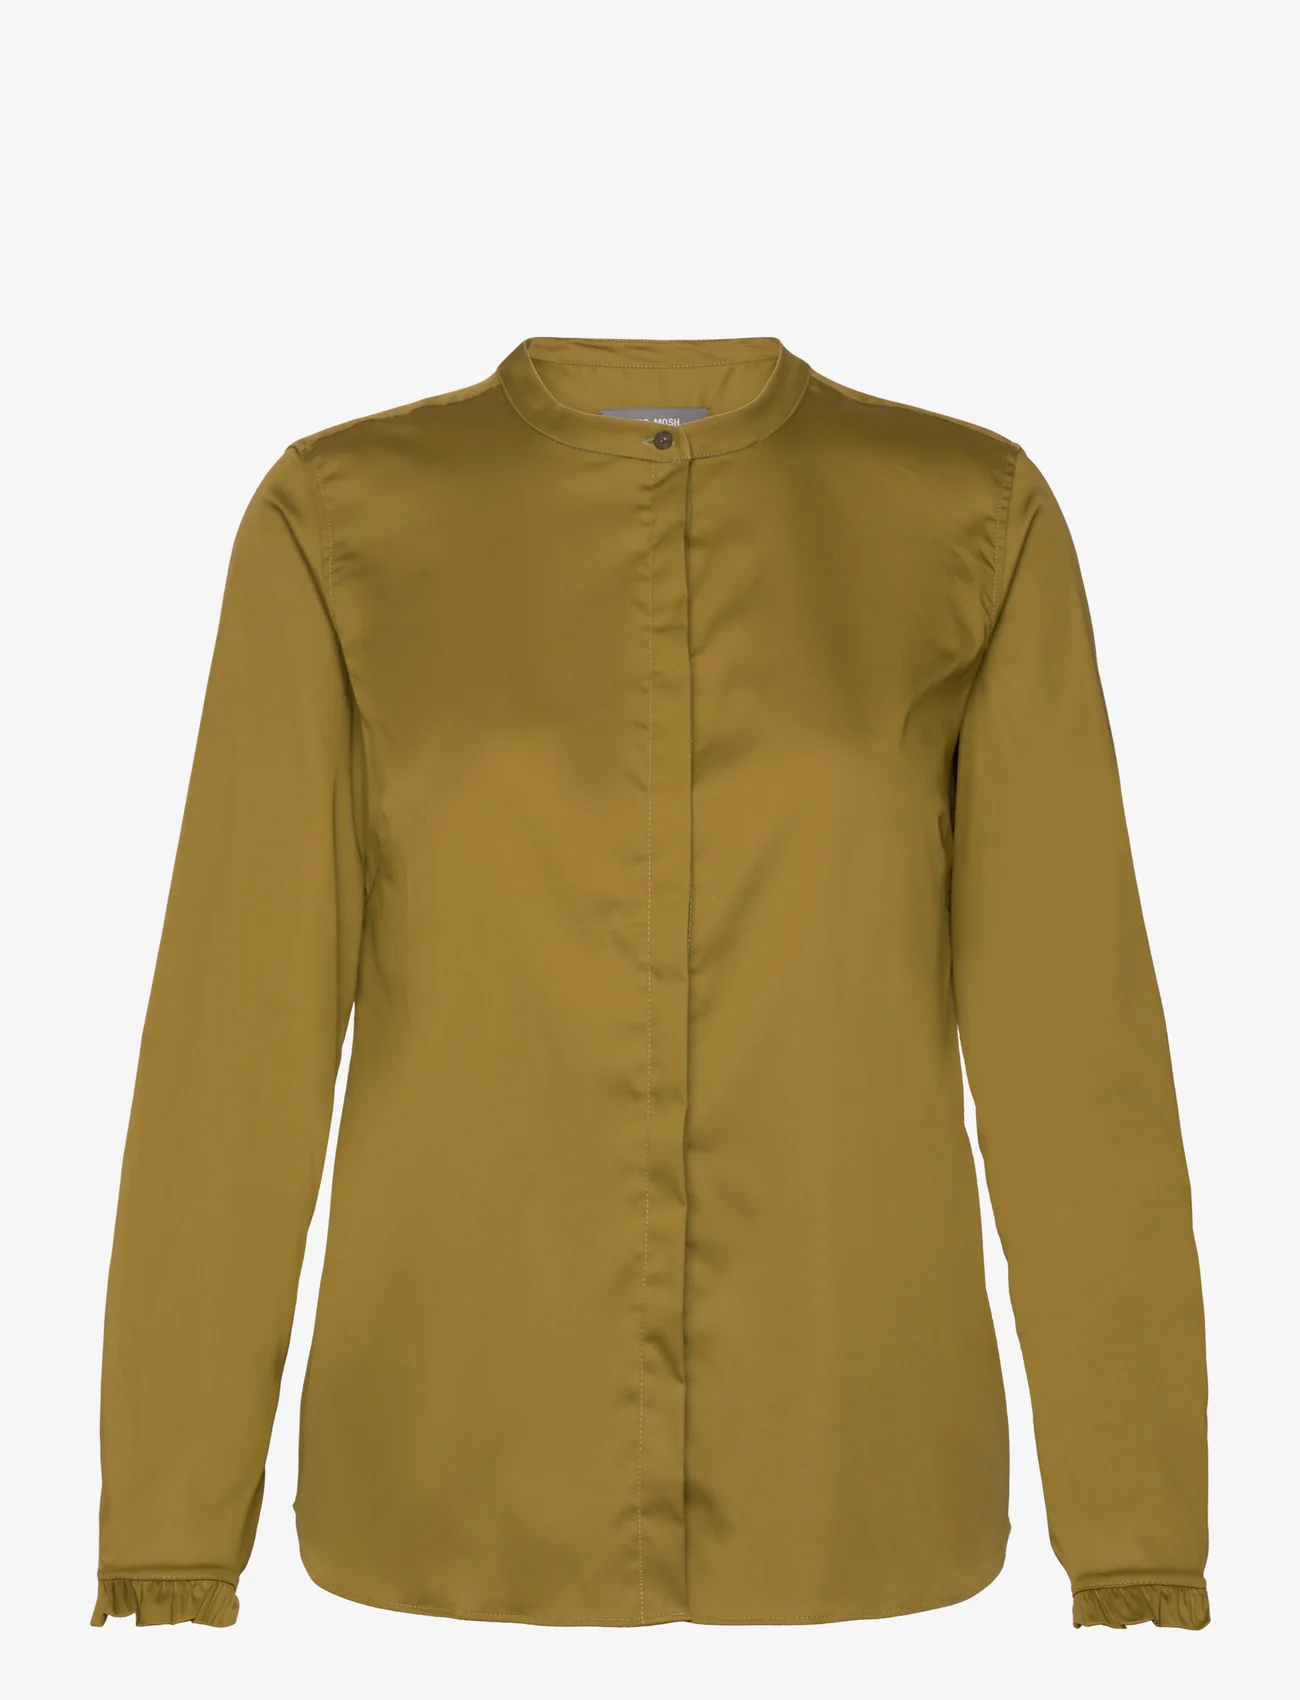 MOS MOSH - Mattie Shirt - blouses met lange mouwen - fir green - 0